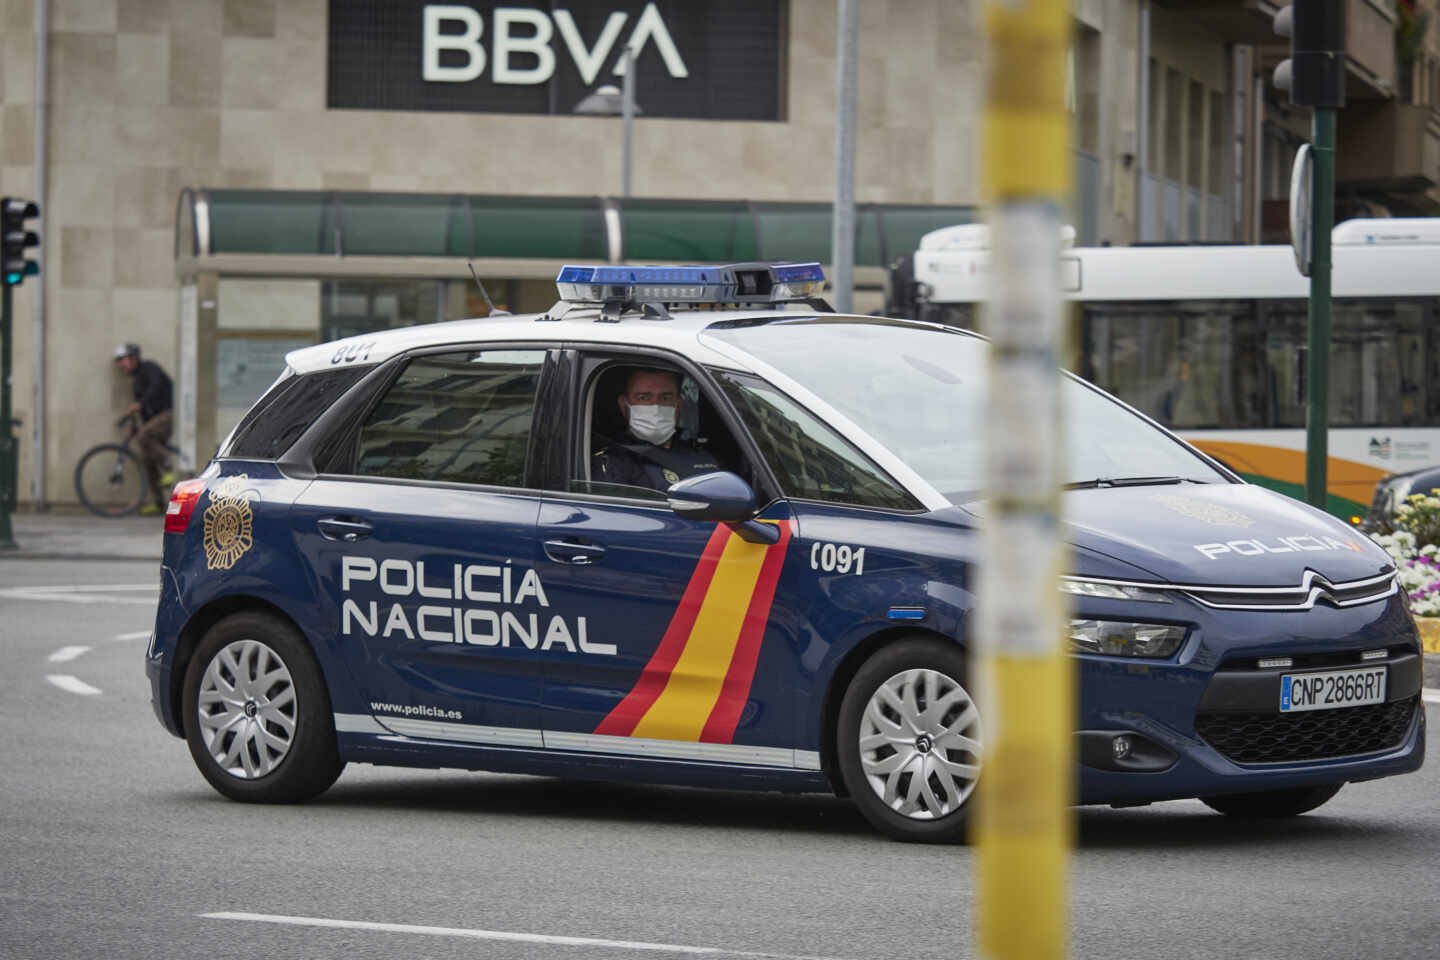 Un vehículo de la Policía Nacional patrulla por una céntrica calle de Pamplona.